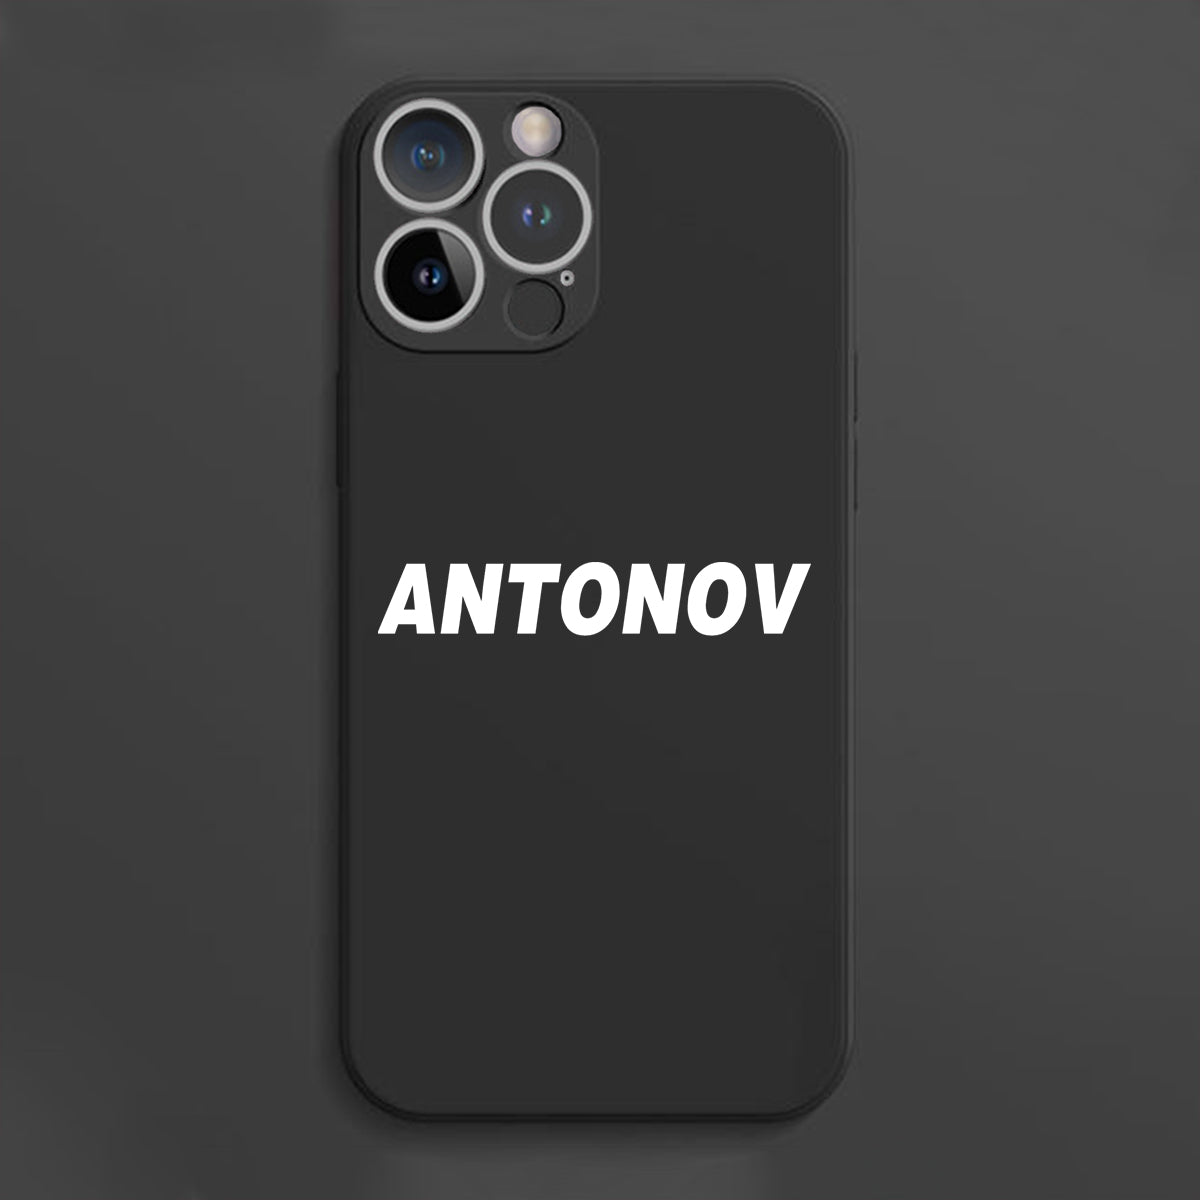 Antonov & Text Designed Soft Silicone iPhone Cases